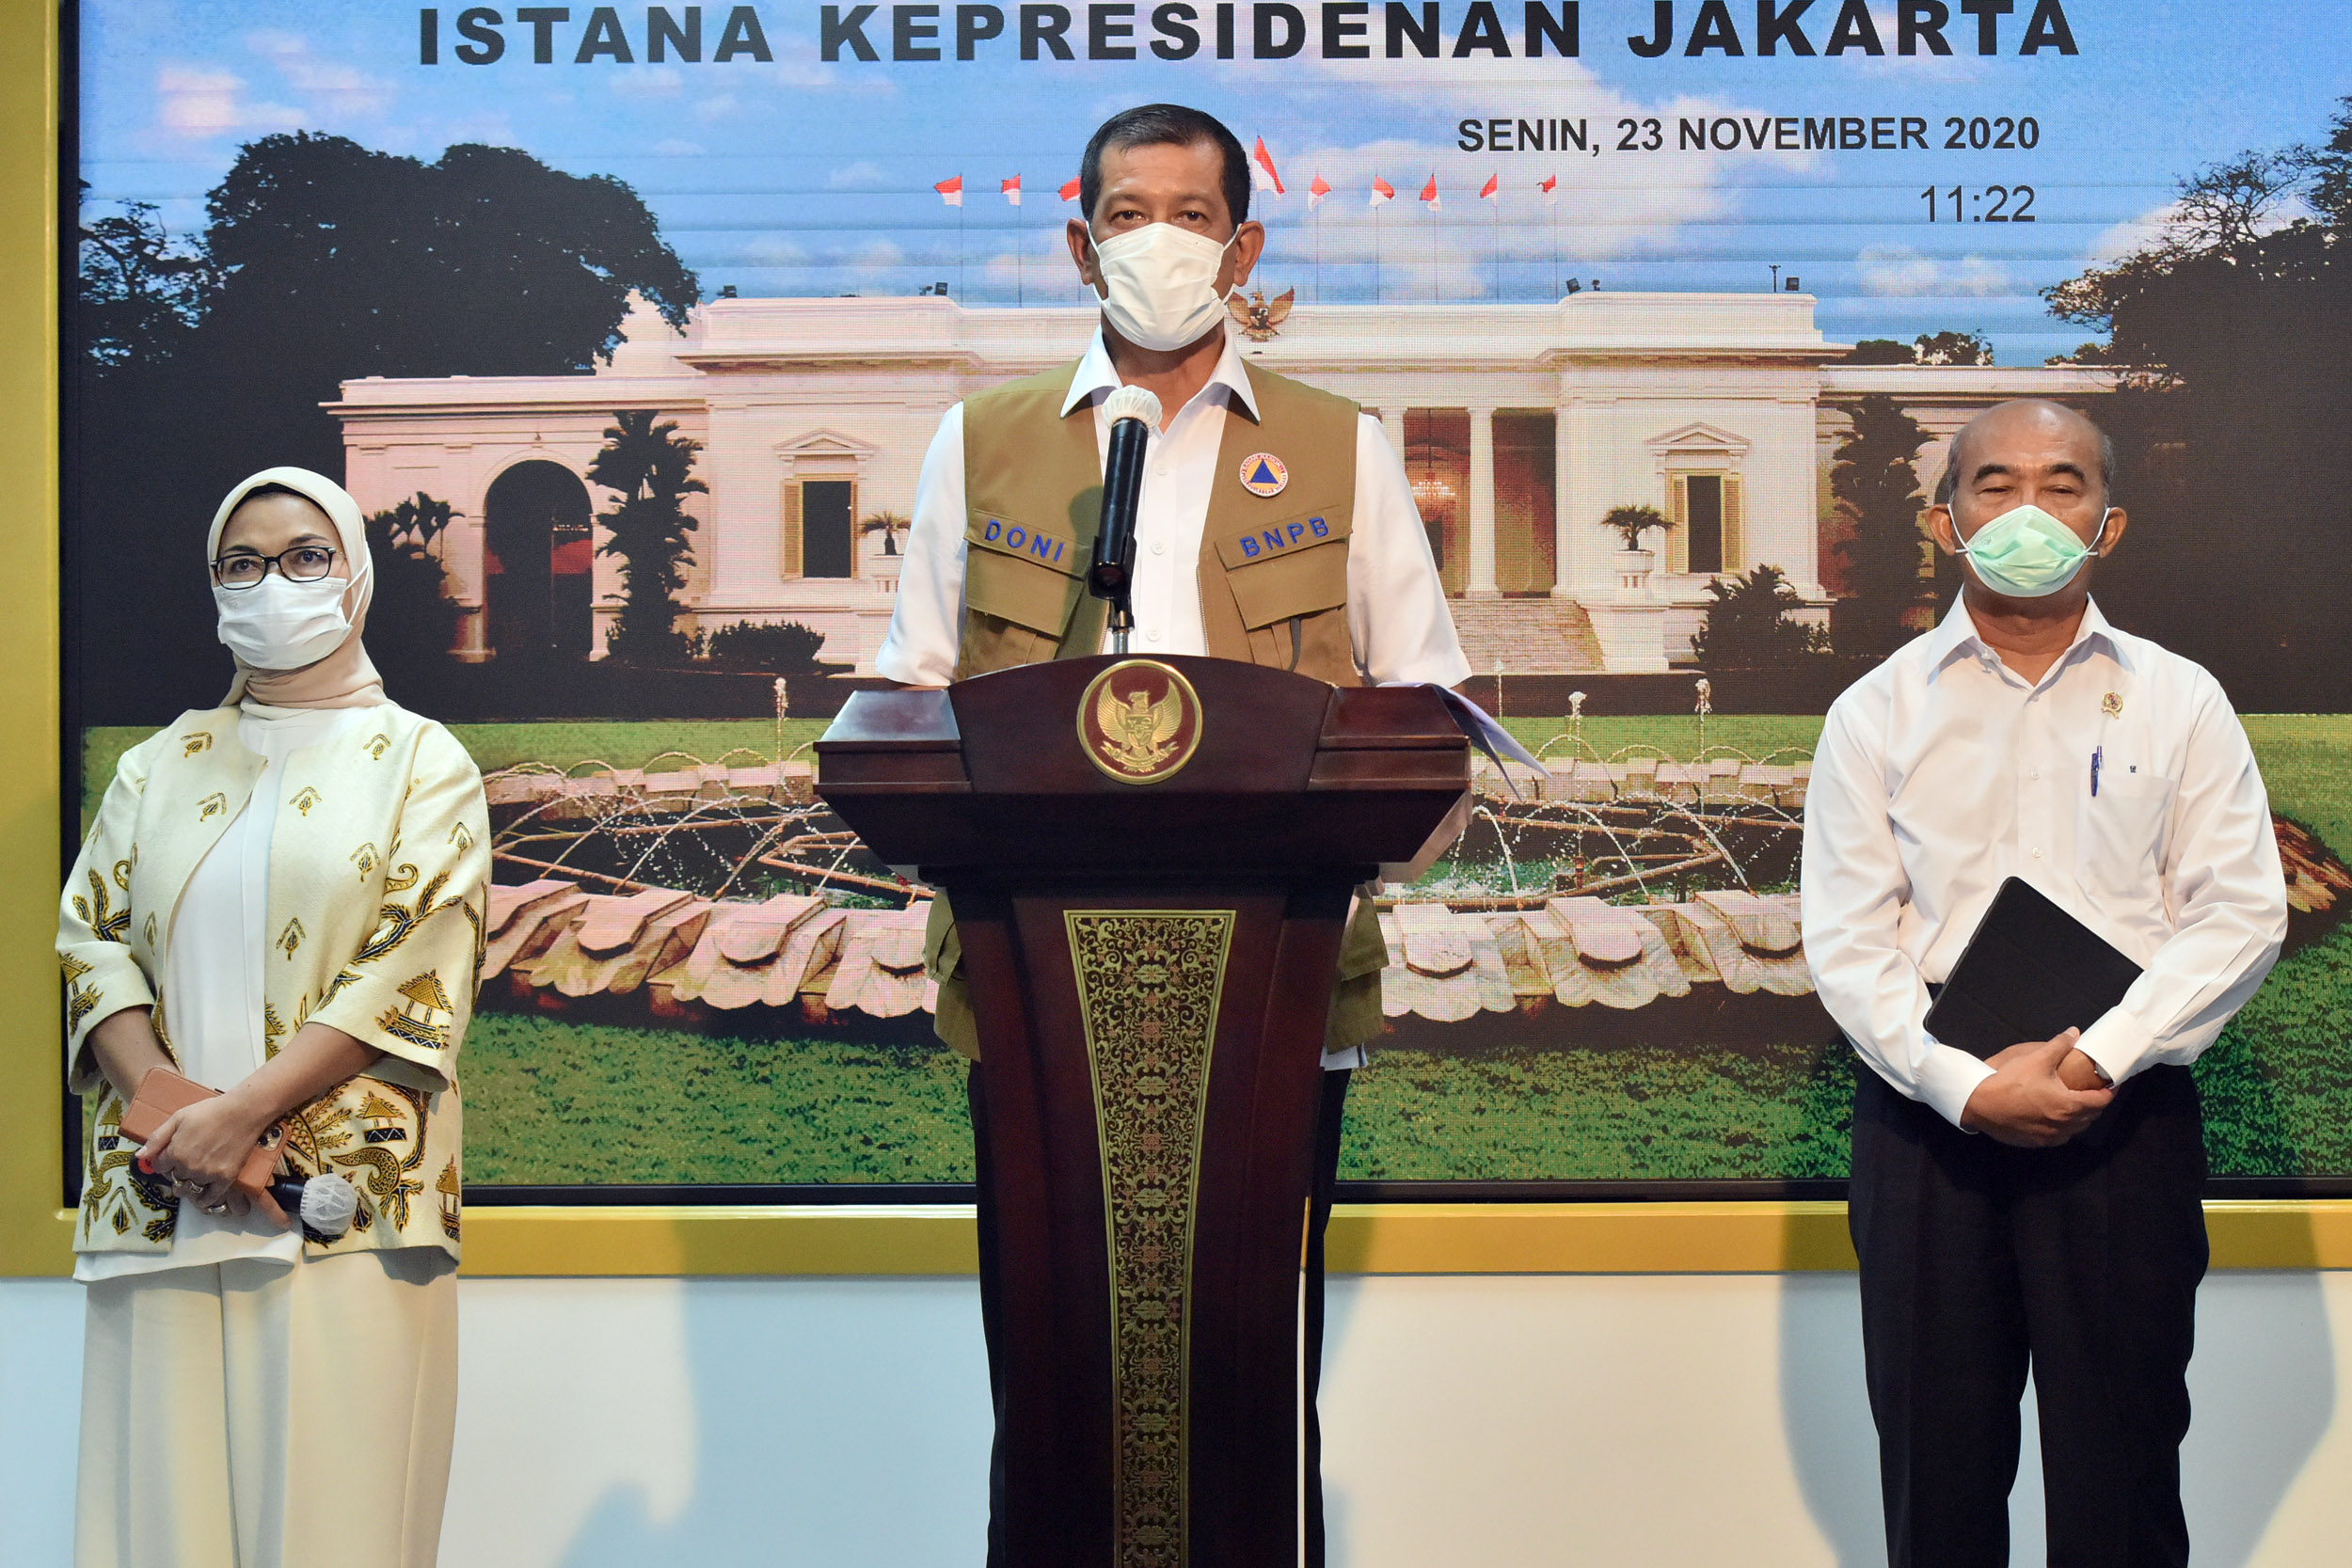 Rata-Rata Kasus Aktif Covid-19 di Indonesia Lebih Rendah Dari Dunia